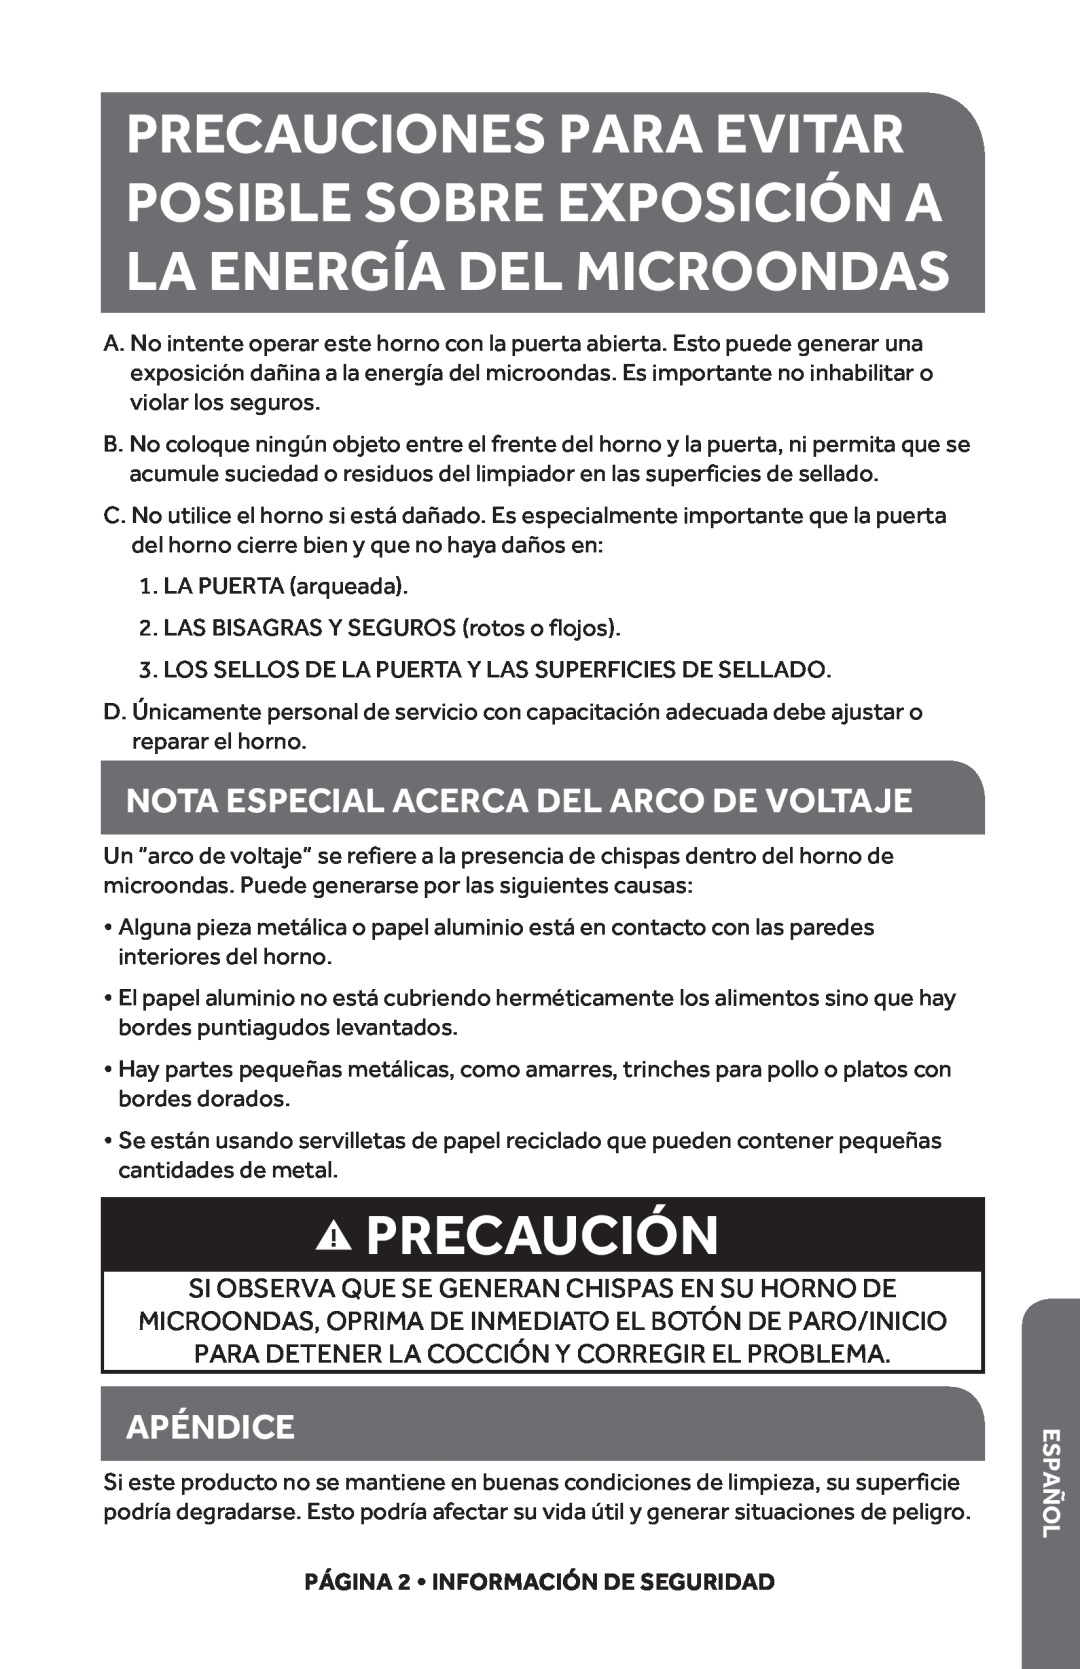 Haier HMC1285SESS user manual Precaución, Nota Especial Acerca Del Arco De Voltaje, Apéndice, Español 